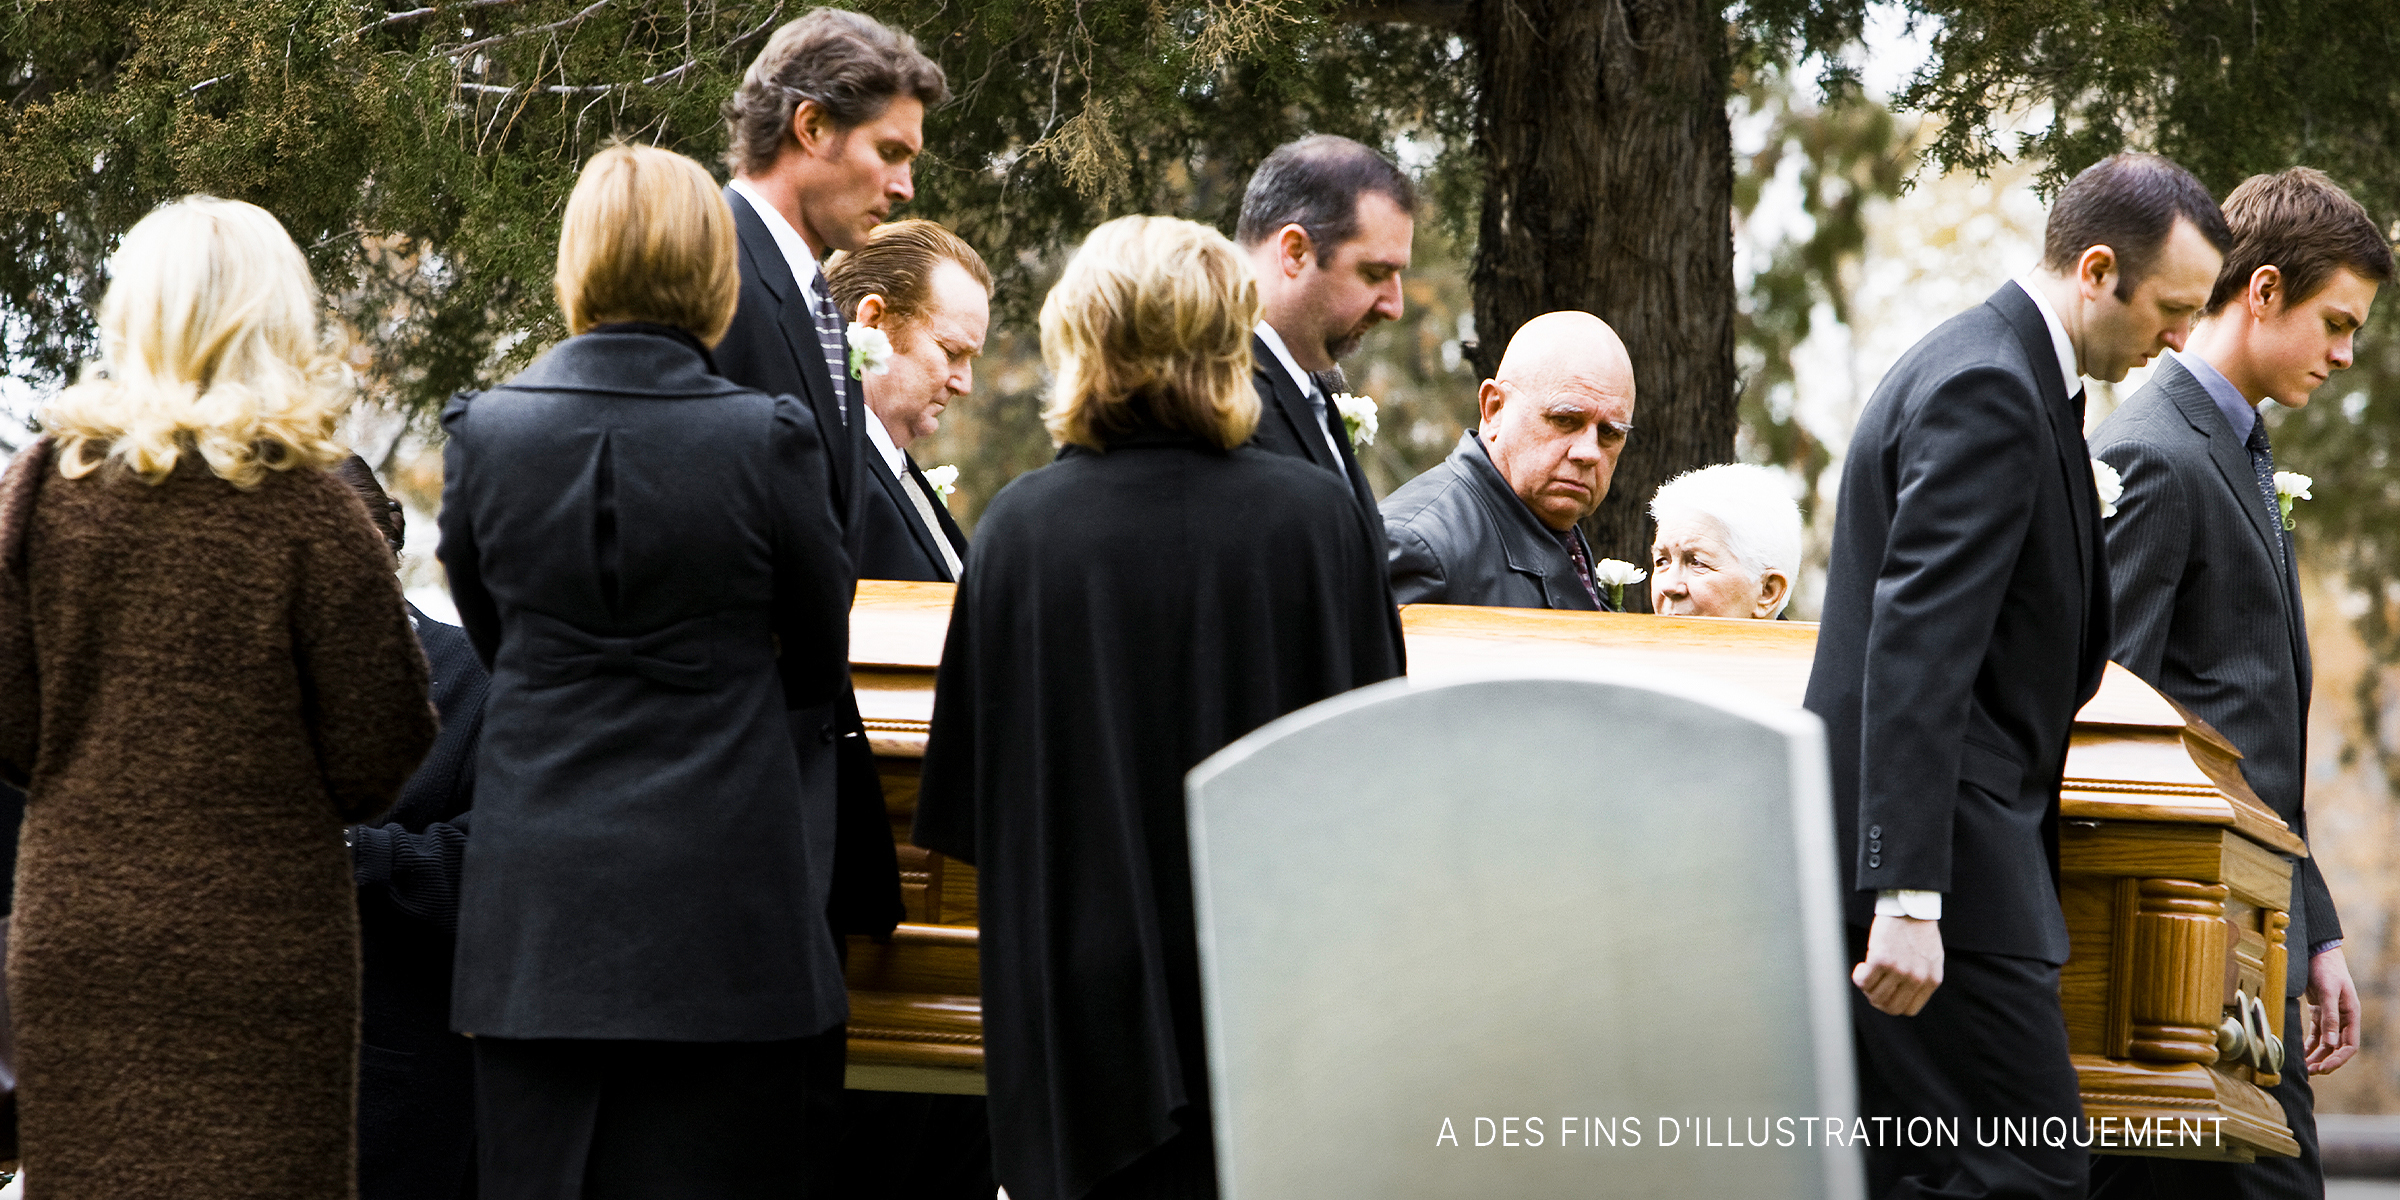 Des personnes à un enterrement | Source : Getty Images